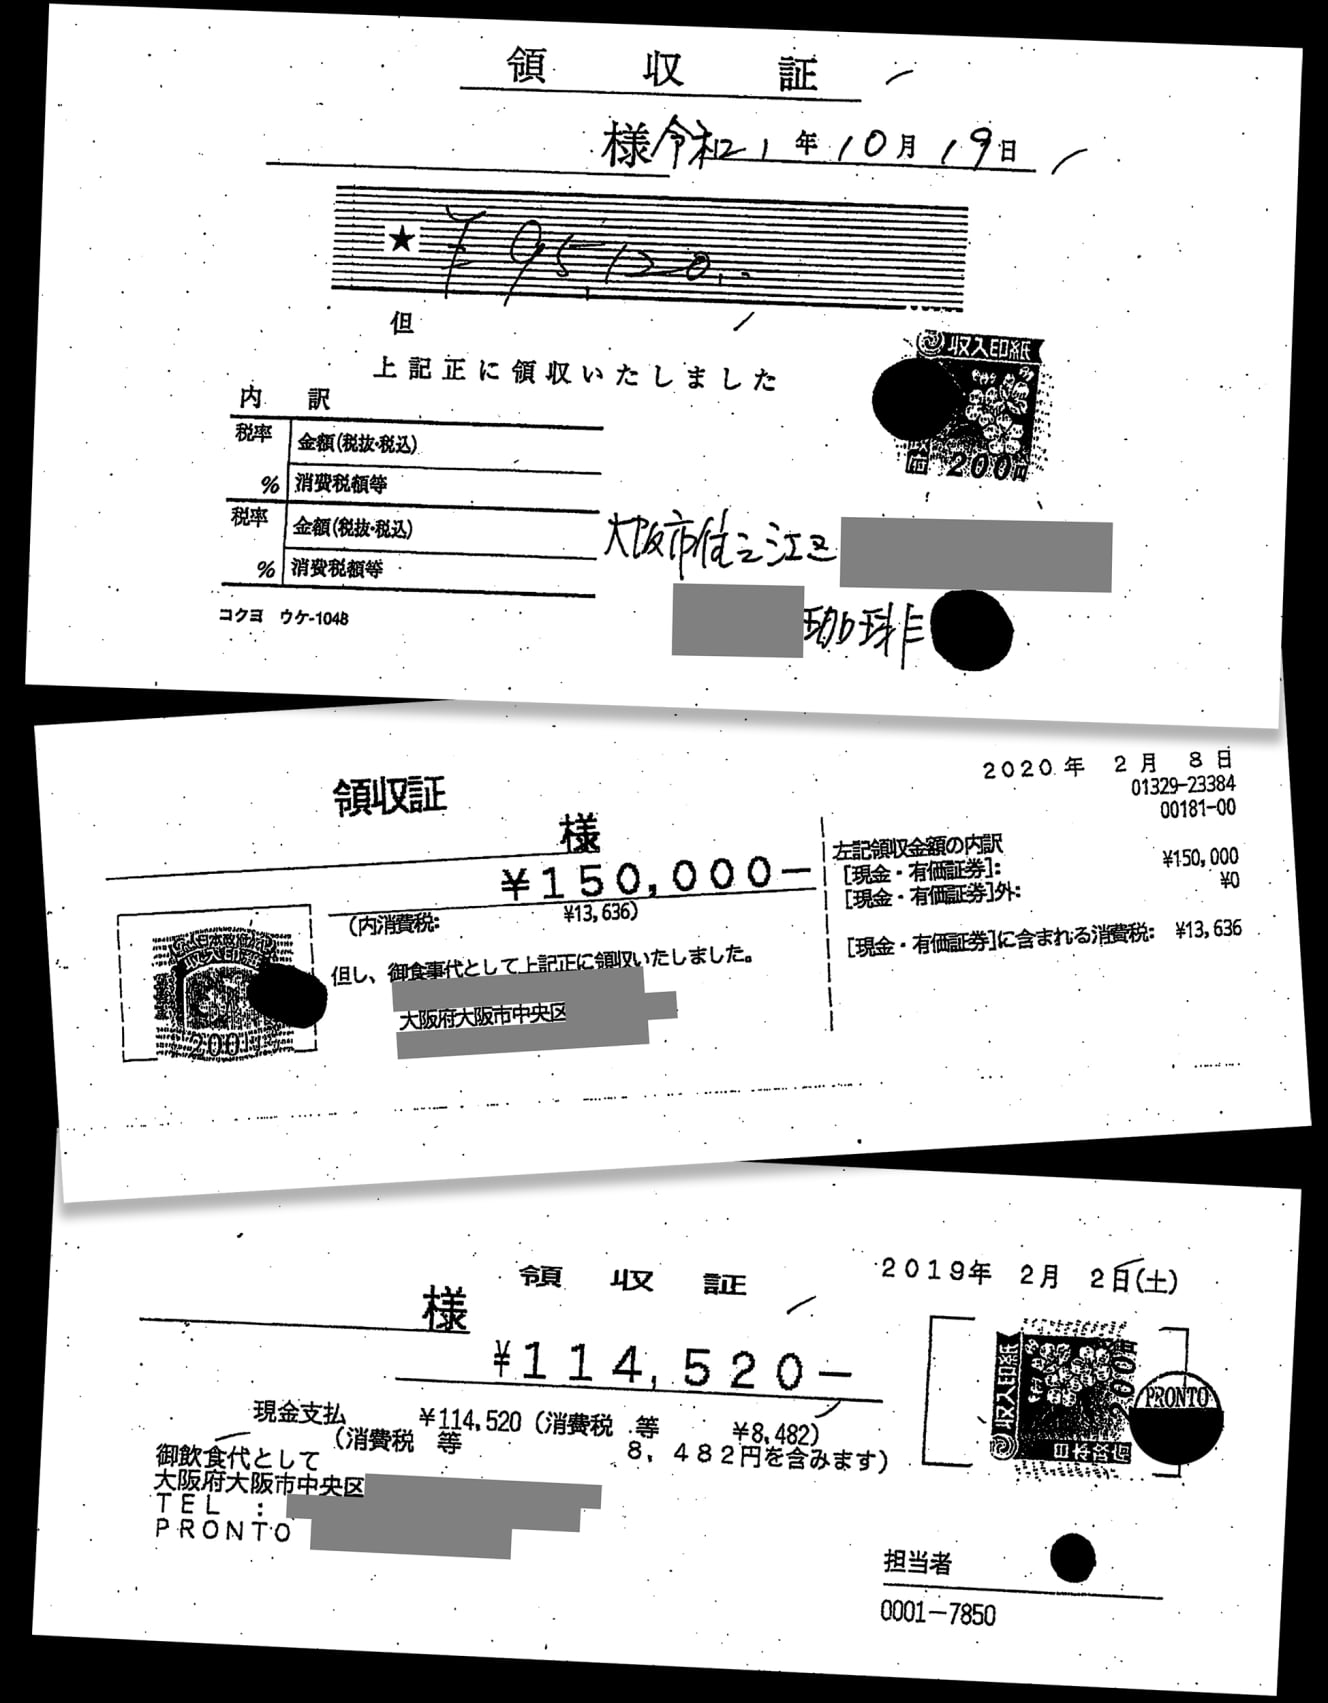 東氏の疑惑の領収書。喫茶店で９万円超使っていることがわかる（一番上）。東氏側は喫茶店を夜間に宴会場として利用したと主張。プロントでも11万円超使用（一番下）